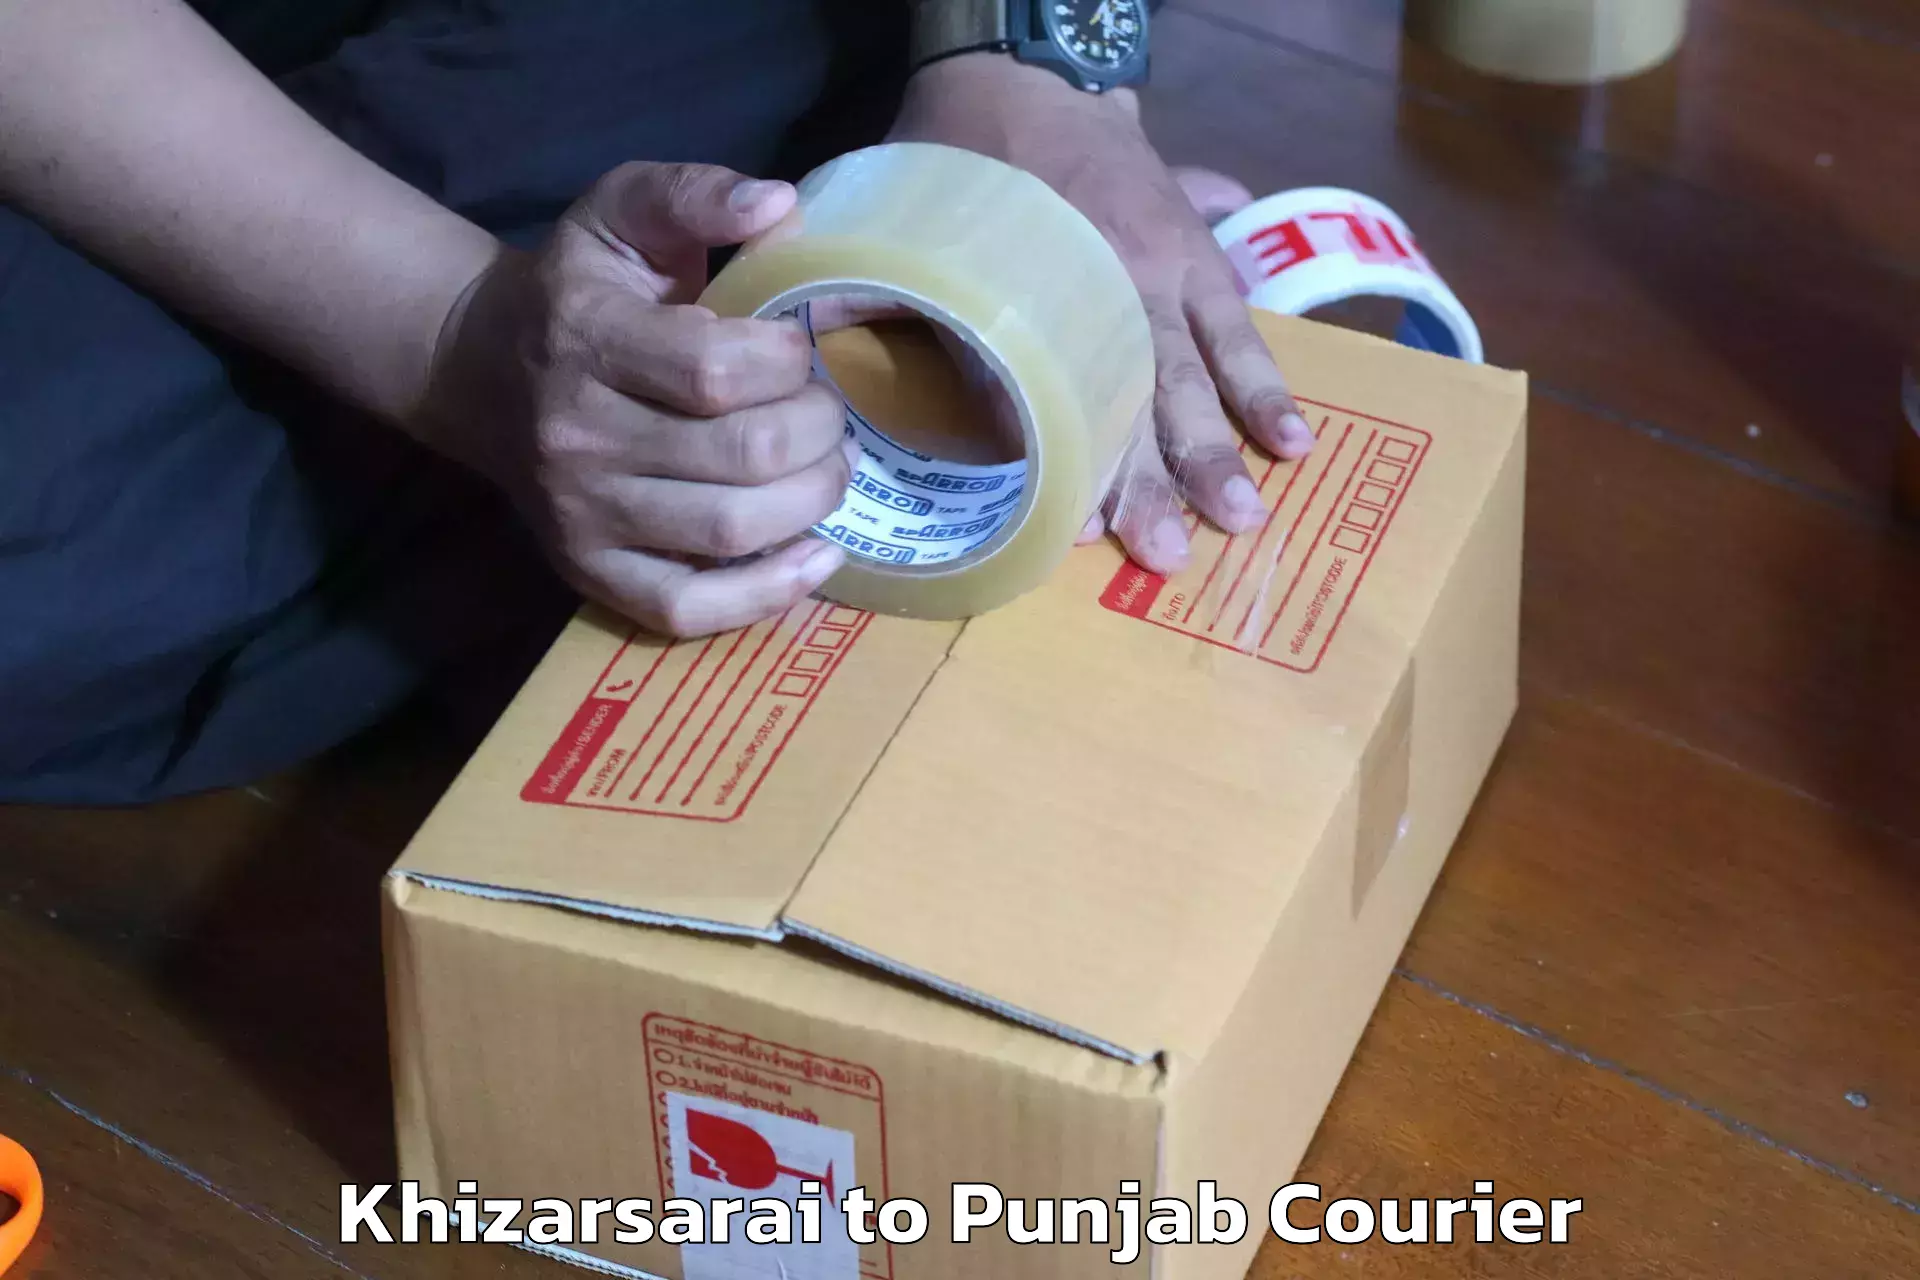 Home goods moving company Khizarsarai to Mohali